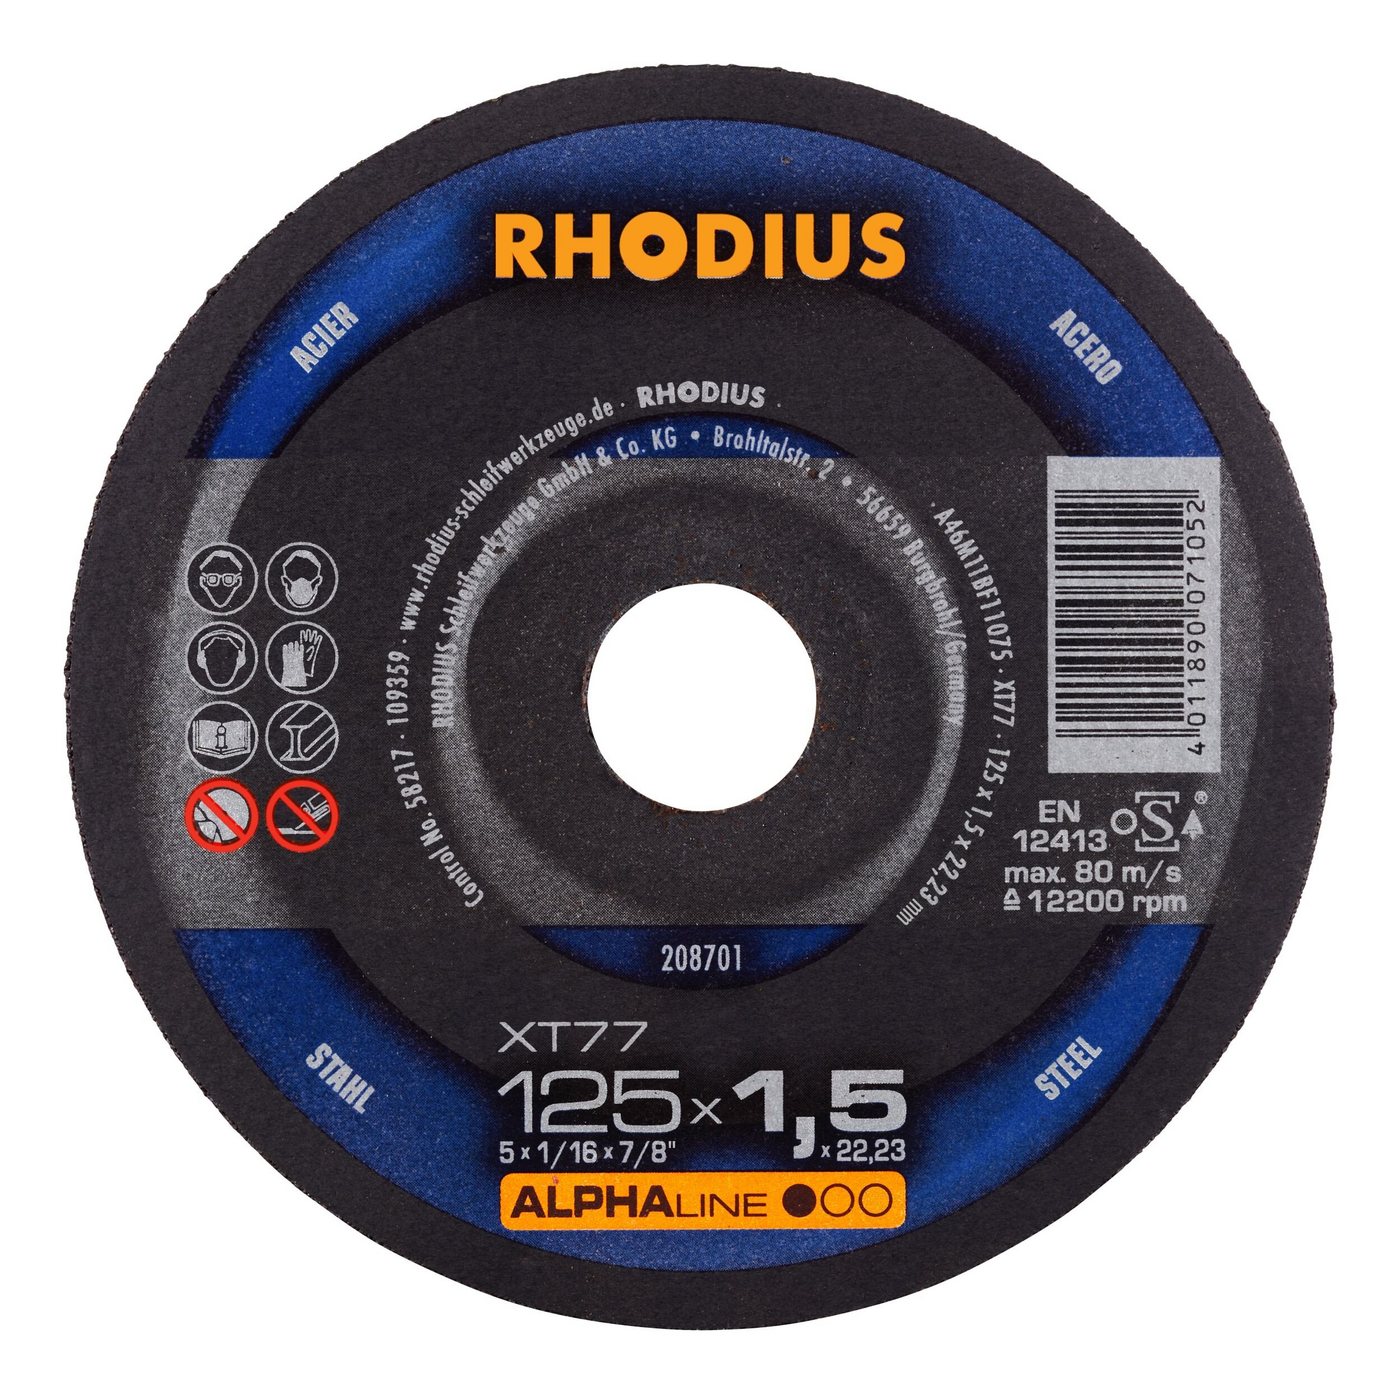 Rhodius Trennscheibe ALPHAline XTS, Ø 125 mm, ALPHAline XT77 Extradünne - 125 x 1,5 x 22,23 mm von Rhodius